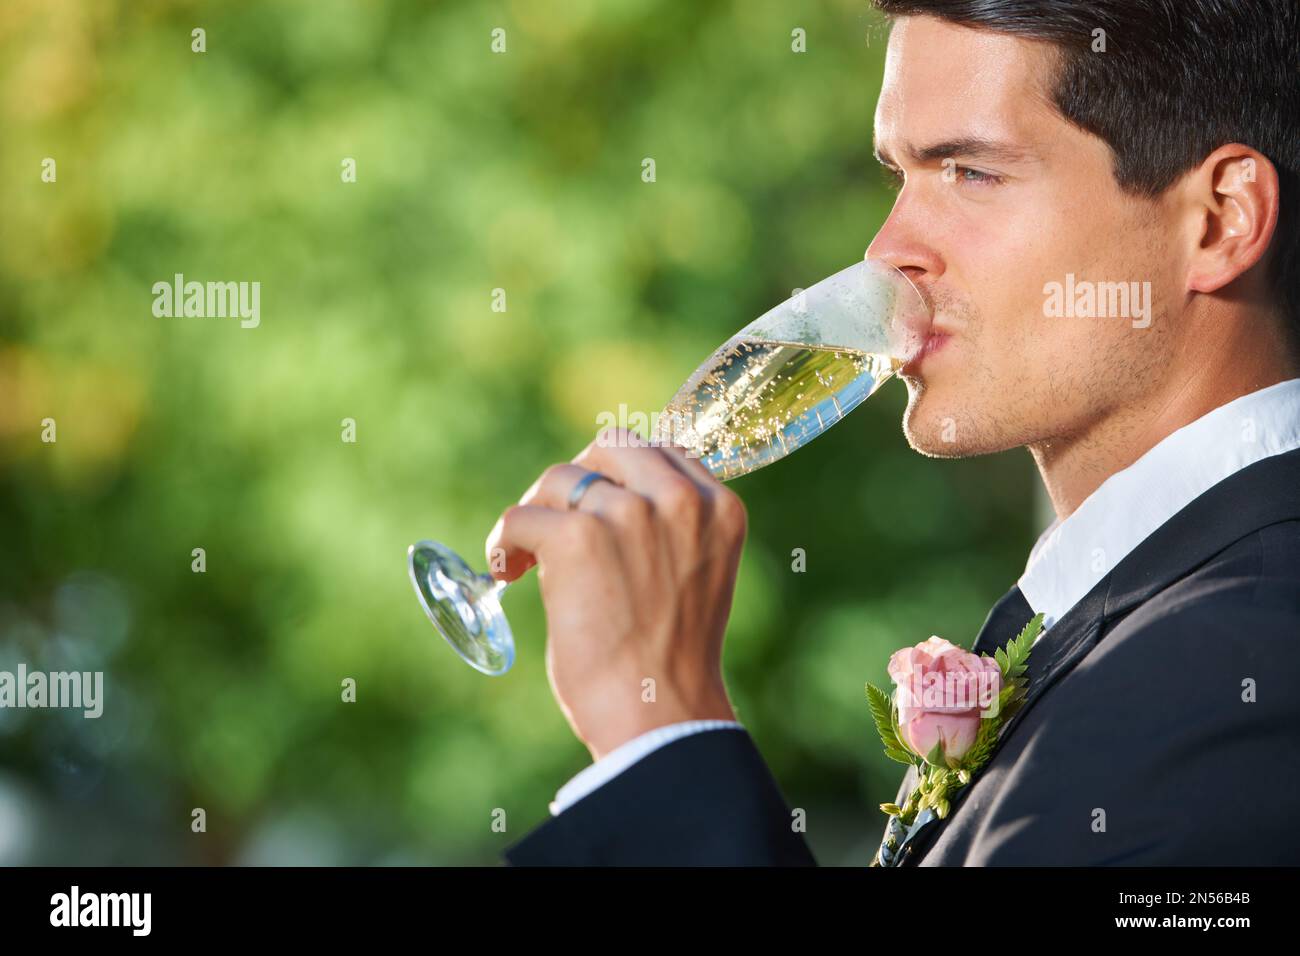 Genießen Sie einen ruhigen Drink an der Rezeption. Profilfoto eines jungen Bräutigams, der ein Glas Champagner trinkt. Stockfoto